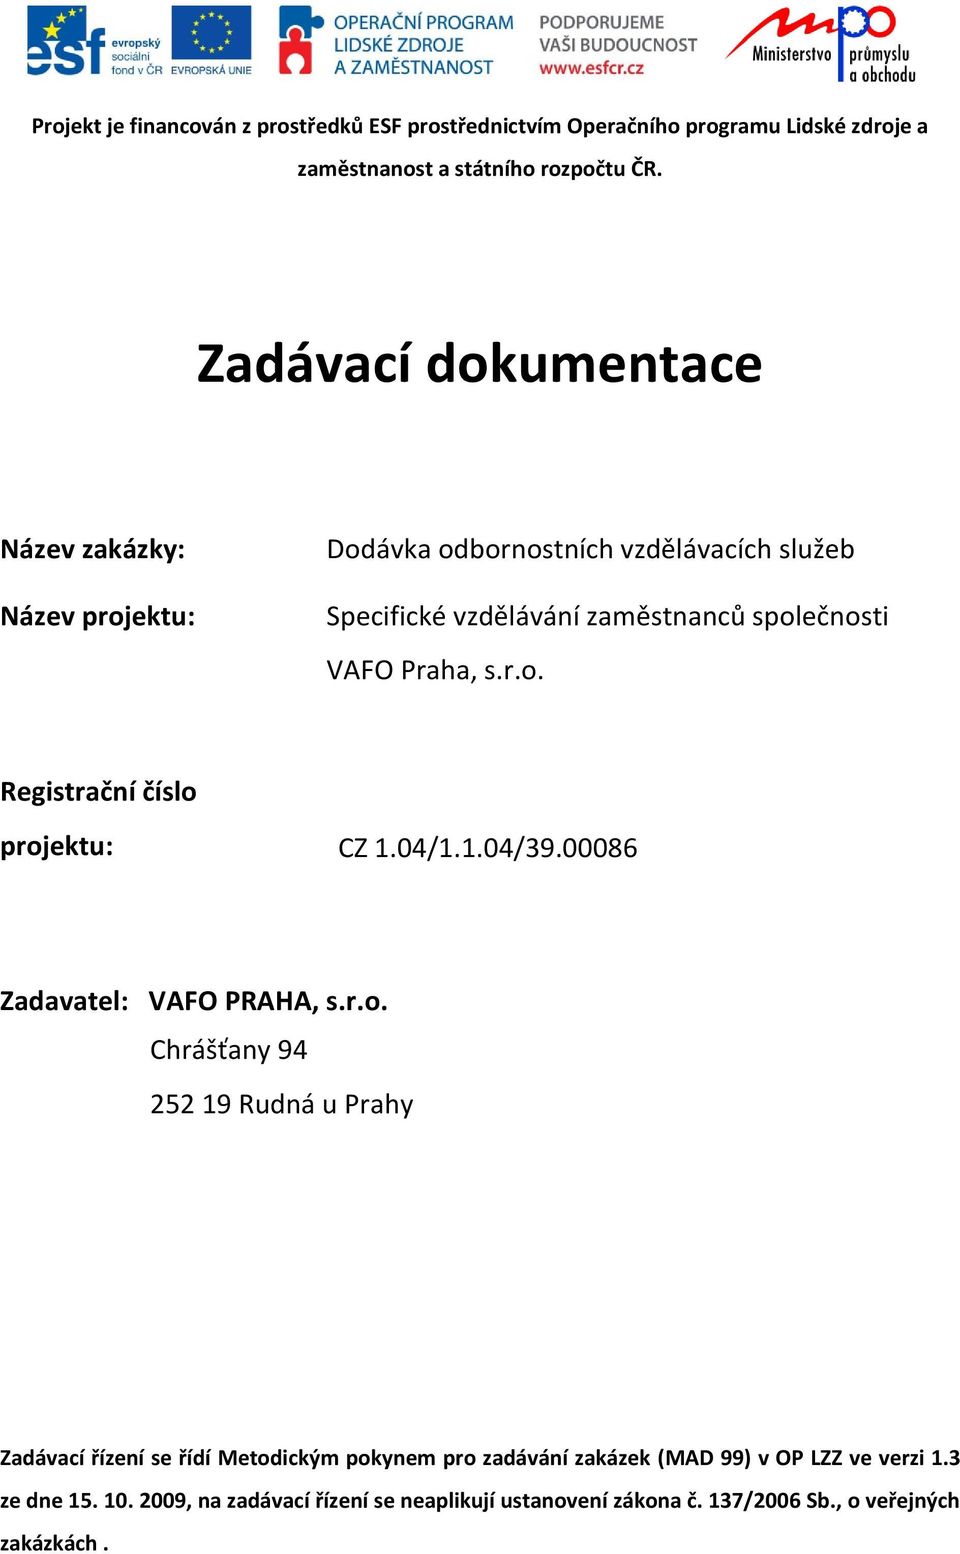 s.r.o. Registrační číslo projektu: CZ 1.04/1.1.04/39.00086 Zadavatel: VAFO PRAHA, s.r.o. Chrášťany 94 252 19 Rudná u Prahy Zadávací řízení se řídí Metodickým pokynem pro zadávání zakázek (MAD 99) v OP LZZ ve verzi 1.